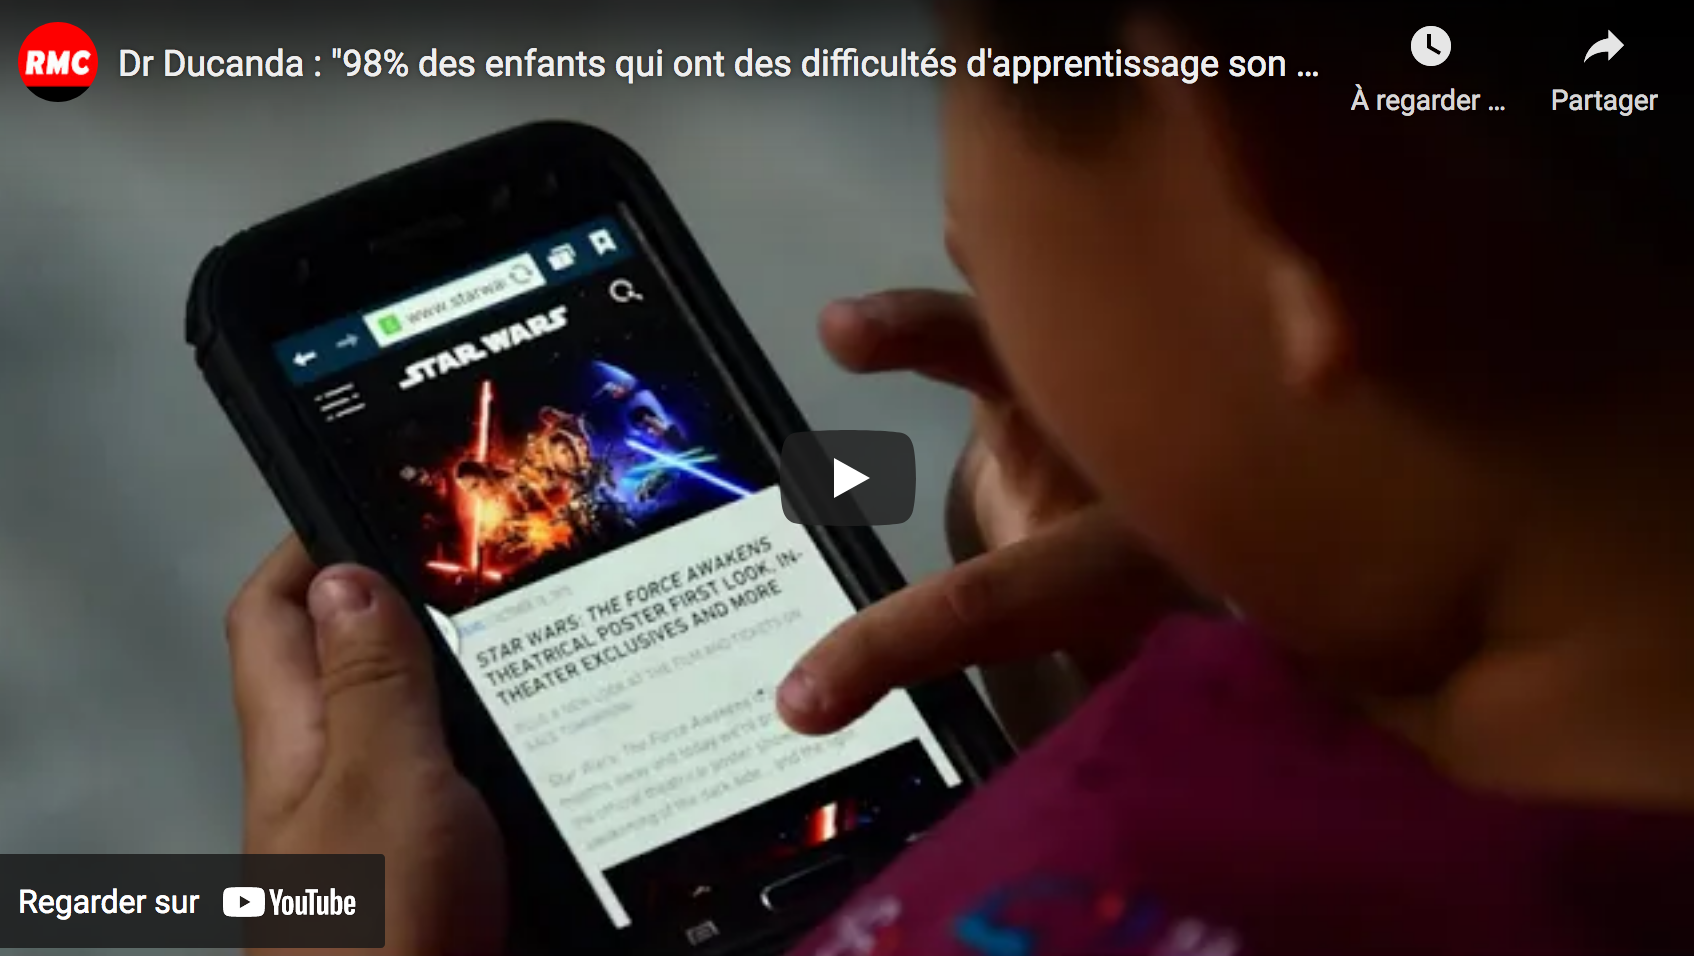 Dr Ducanda : “98% des enfants qui ont des difficultés d’apprentissage son surexposés aux écrans” (AUDIO)